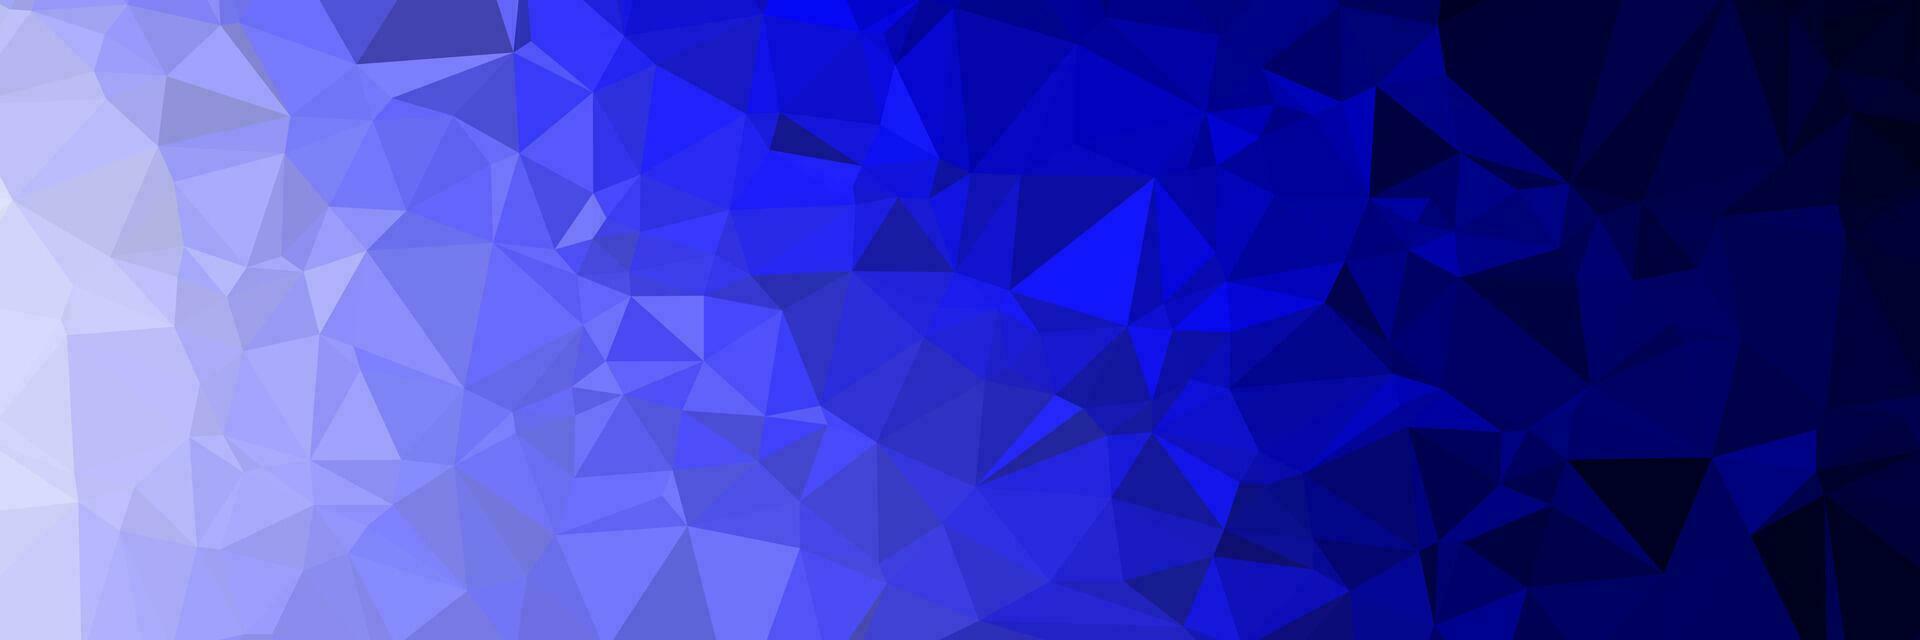 abstrakter blauer Hintergrund mit Dreiecken vektor